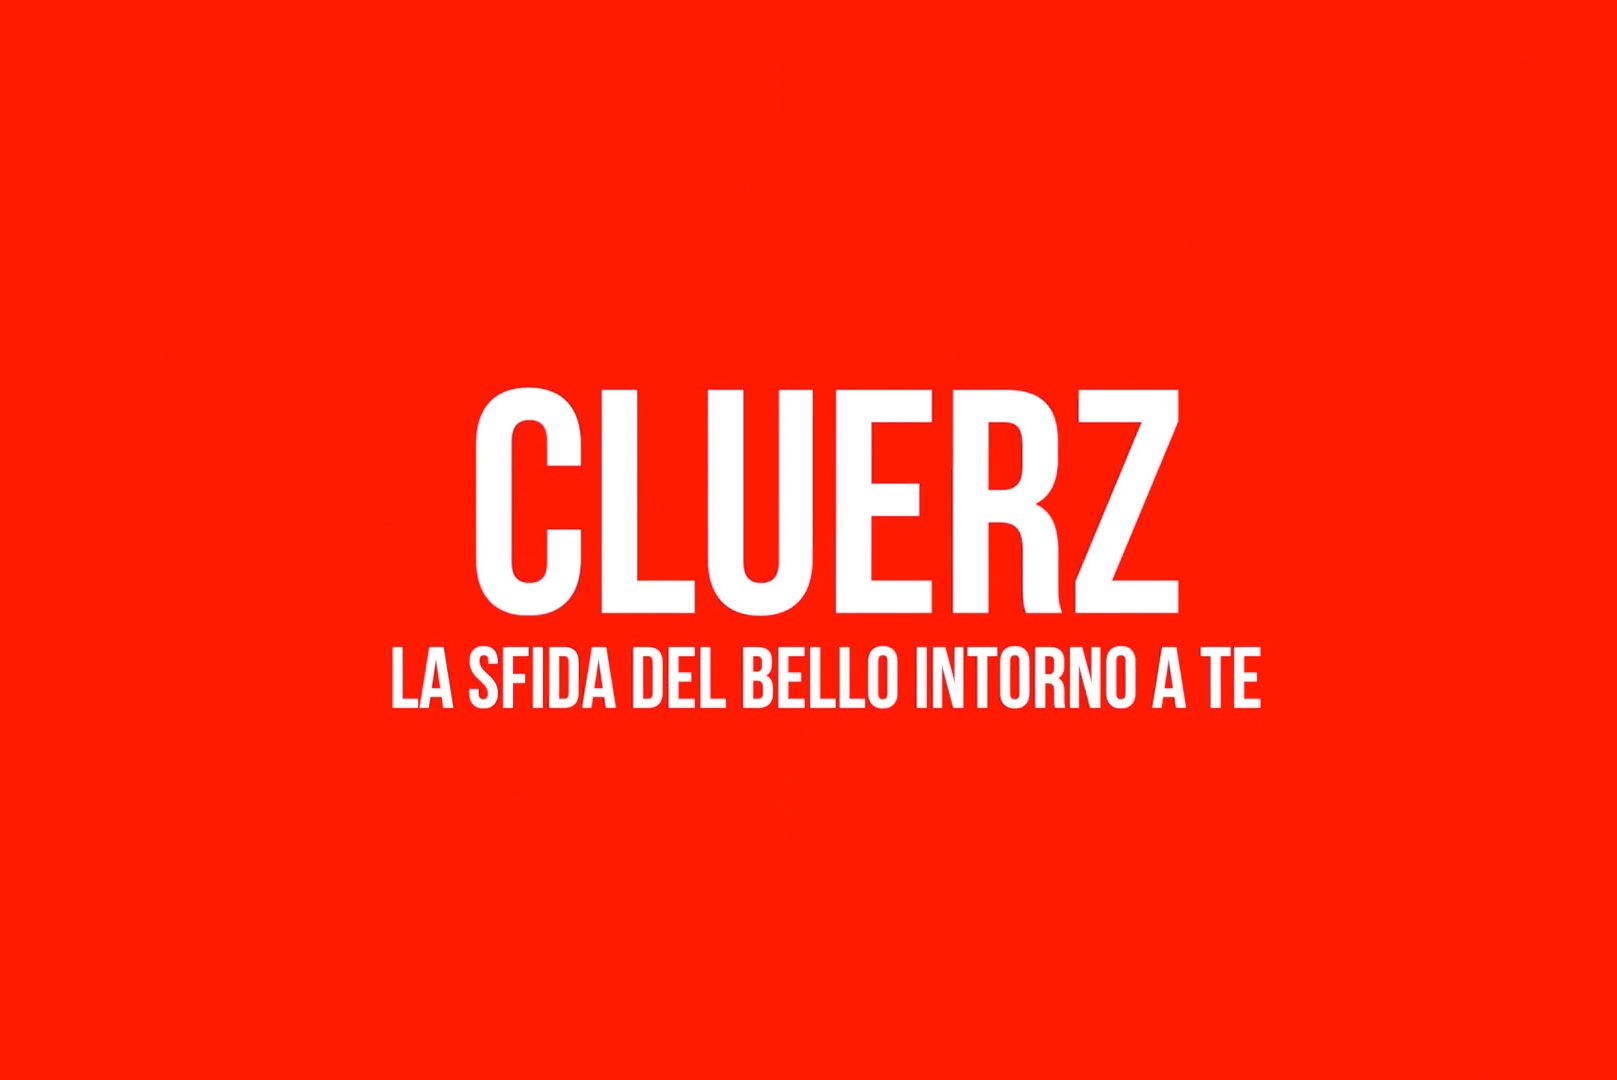 Cluerz